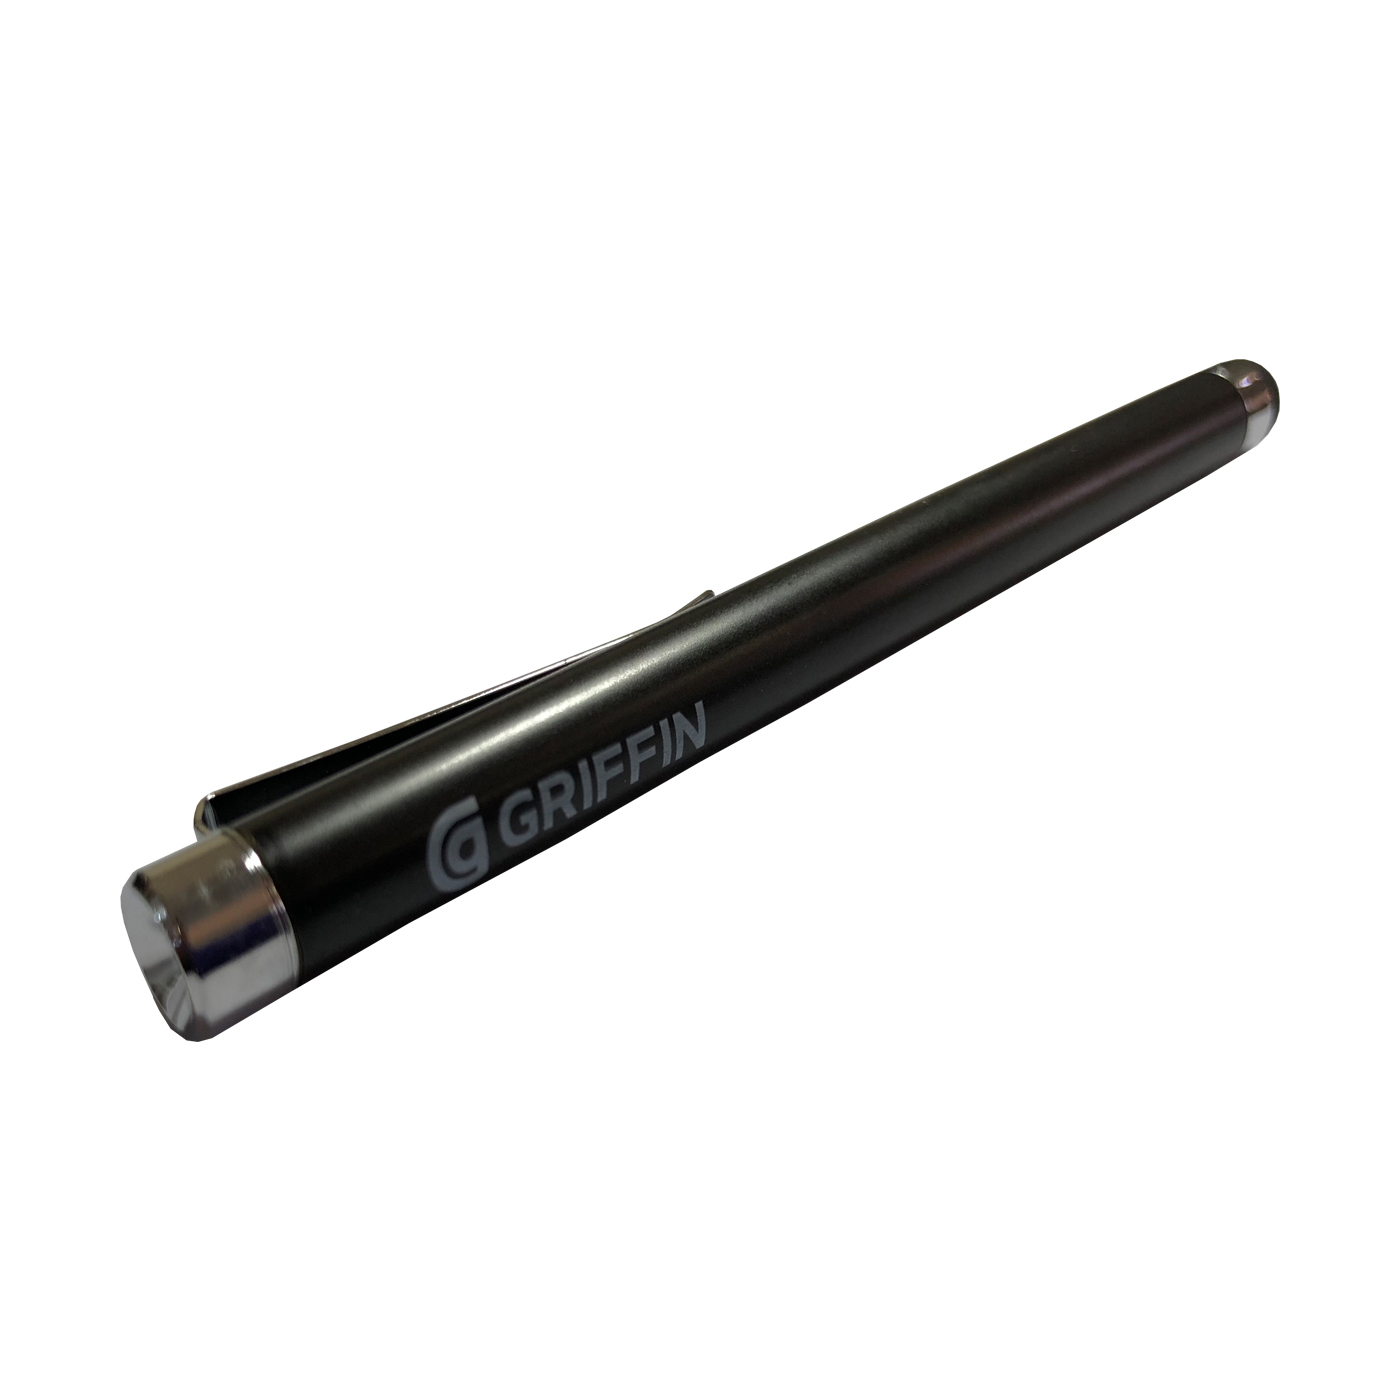 قلم لمسی گریفین مدل GC16040